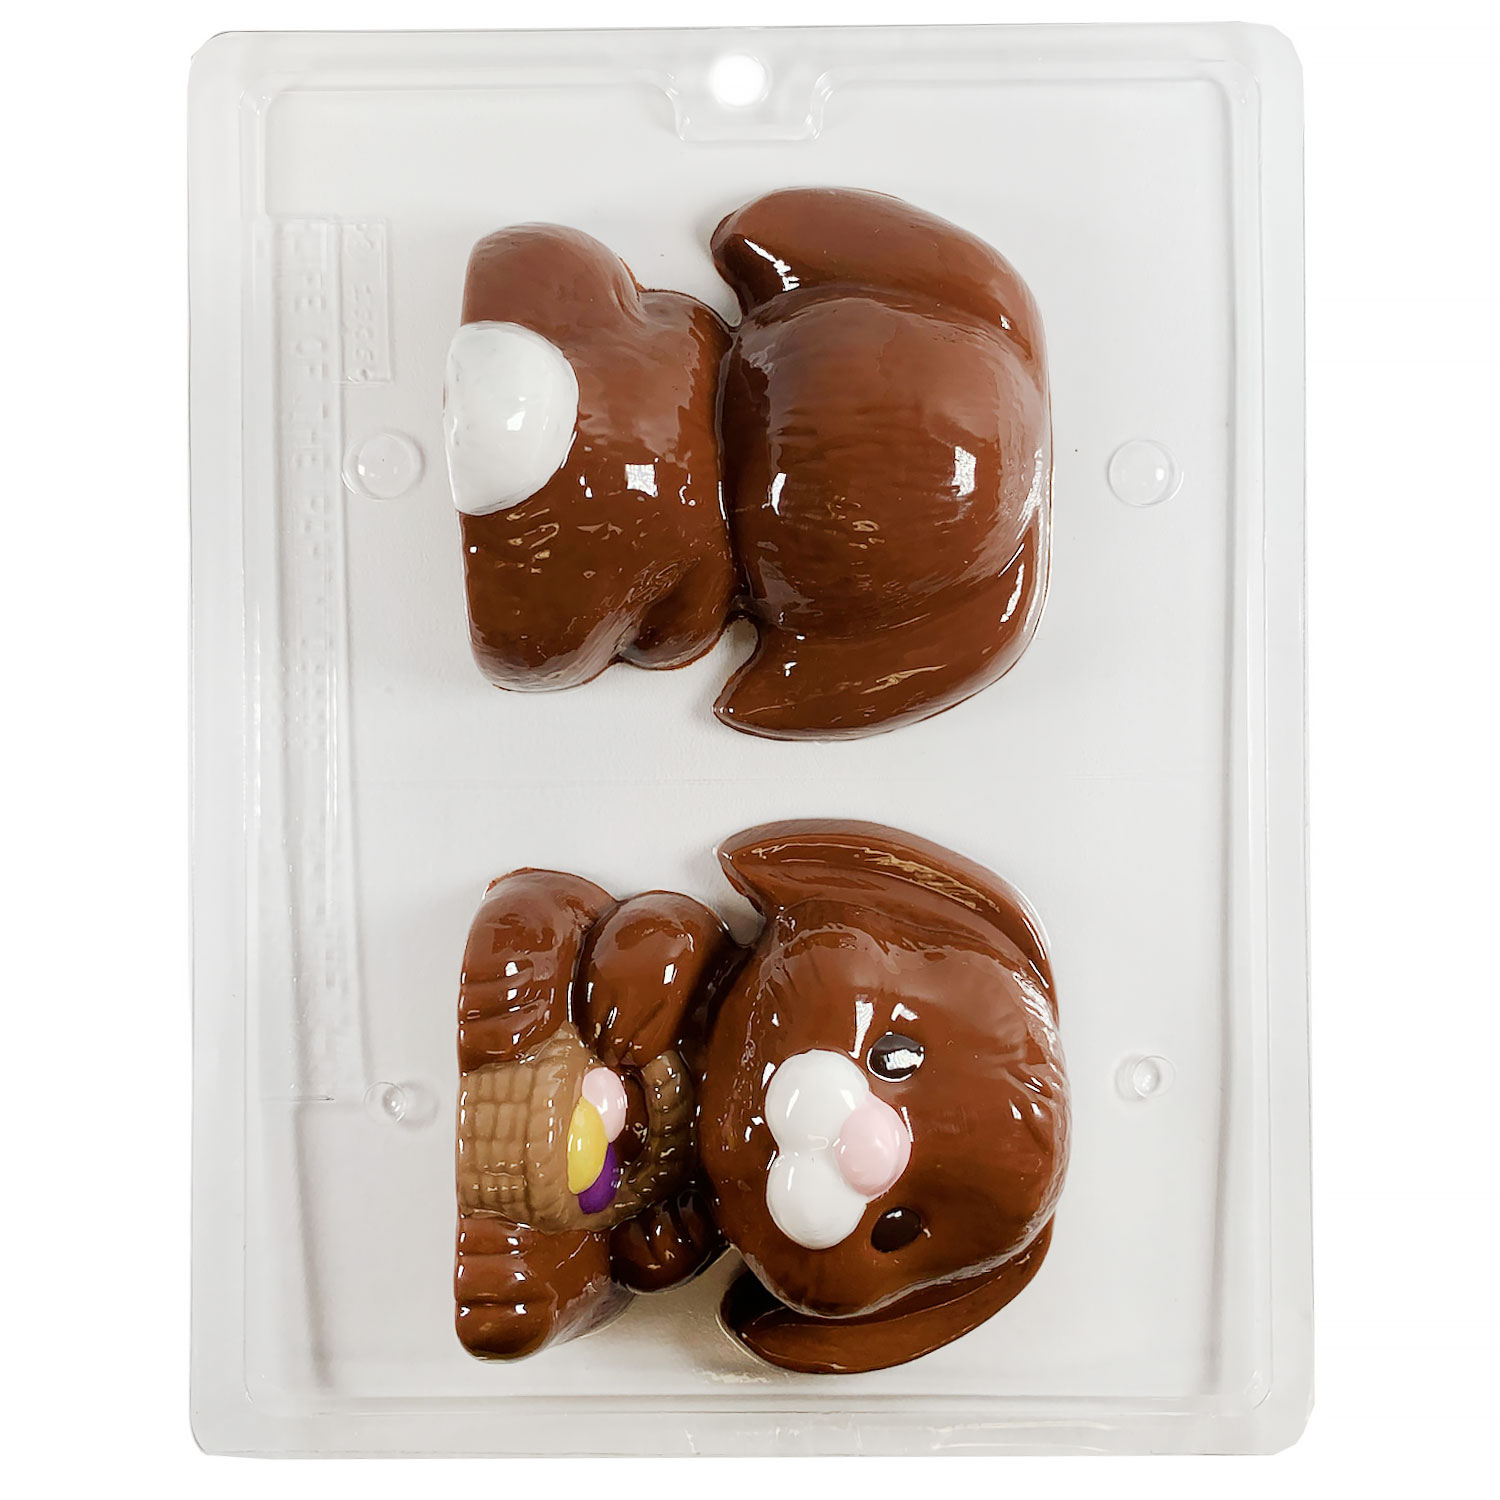 3D Floppy Ear Bunny Chocolate Mold